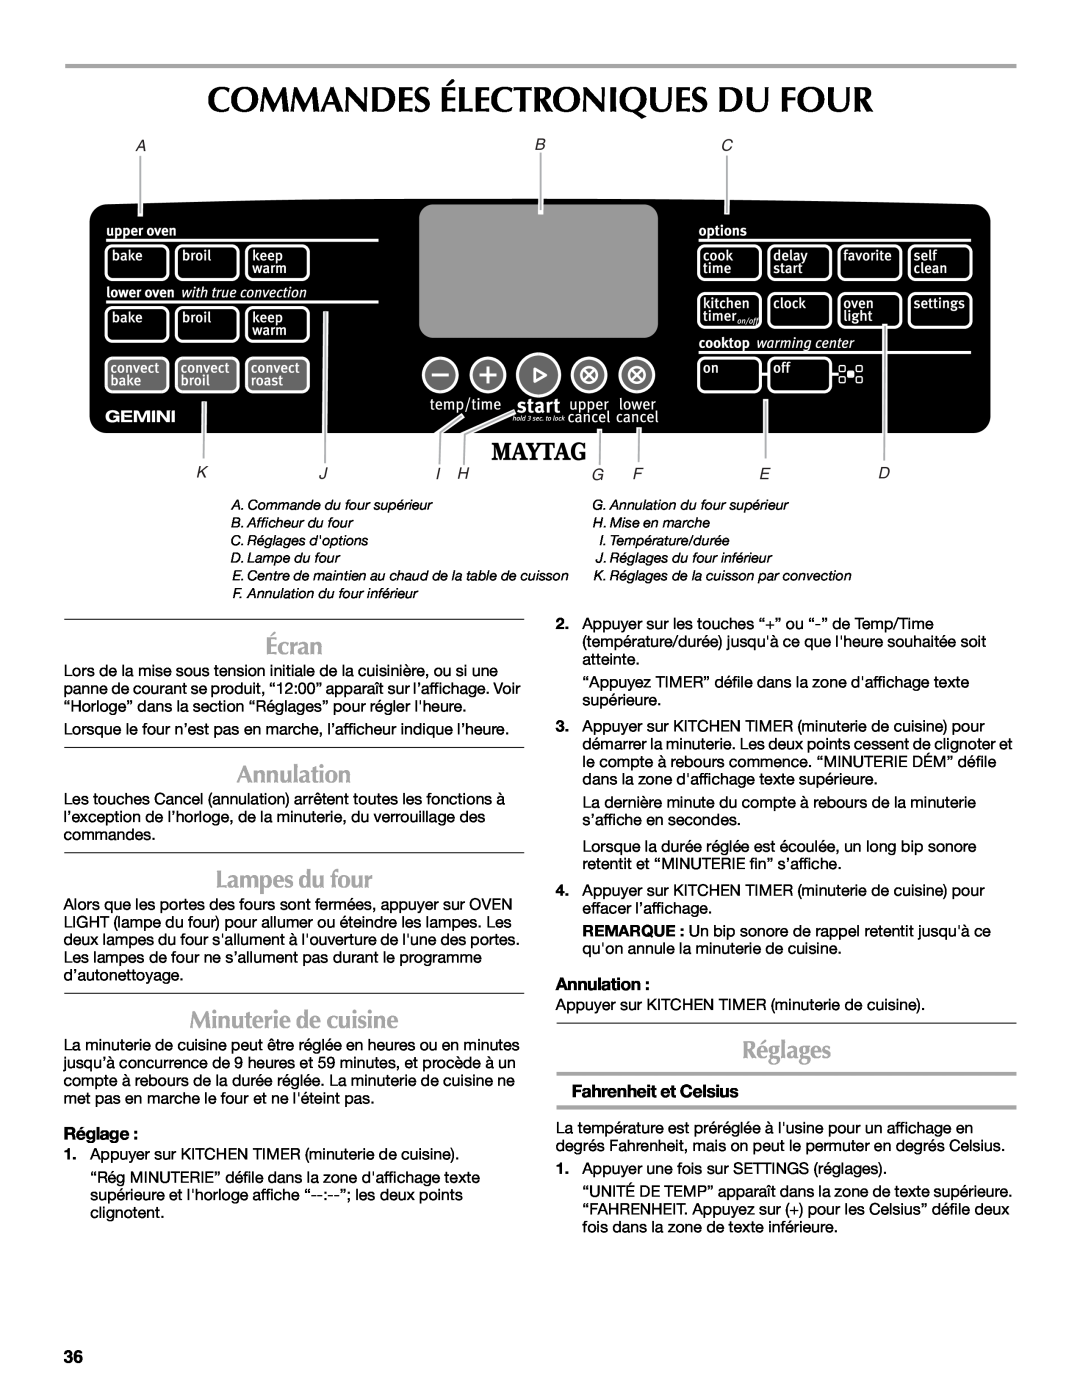 Maytag W10345638A manual Commandes Électroniques Du Four, Écran, Annulation, Lampes du four, Minuterie de cuisine, Réglages 